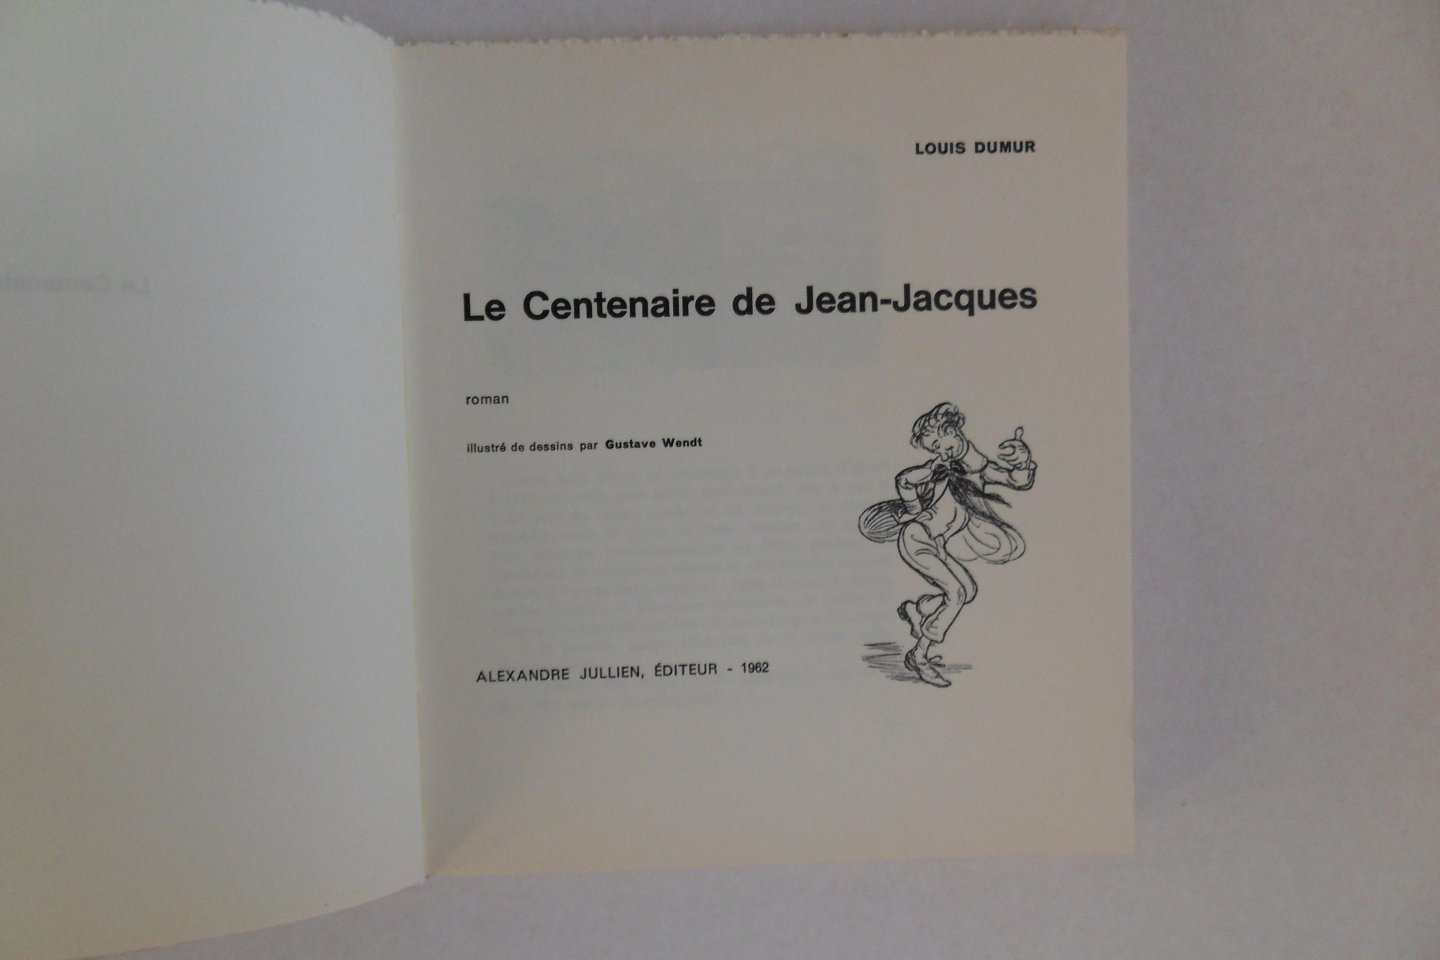 Dumur, Louis. - Le Centenaire de Jean-Jacques. - Roman.